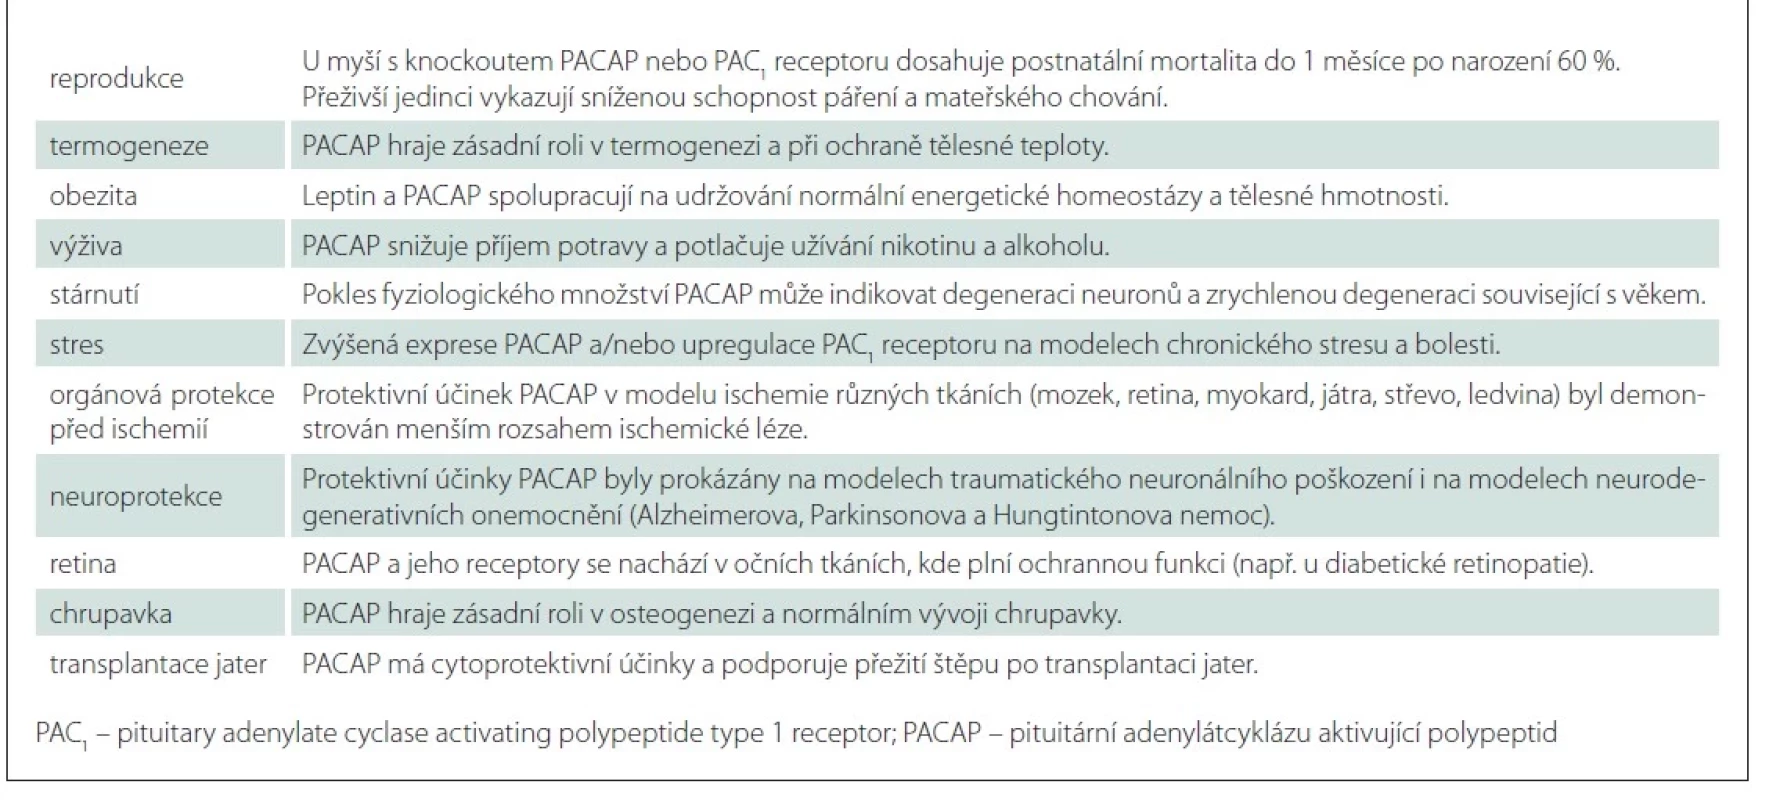 Stručný přehled studované funkce PACAP v různých oblastech medicíny (převzato z [5]).